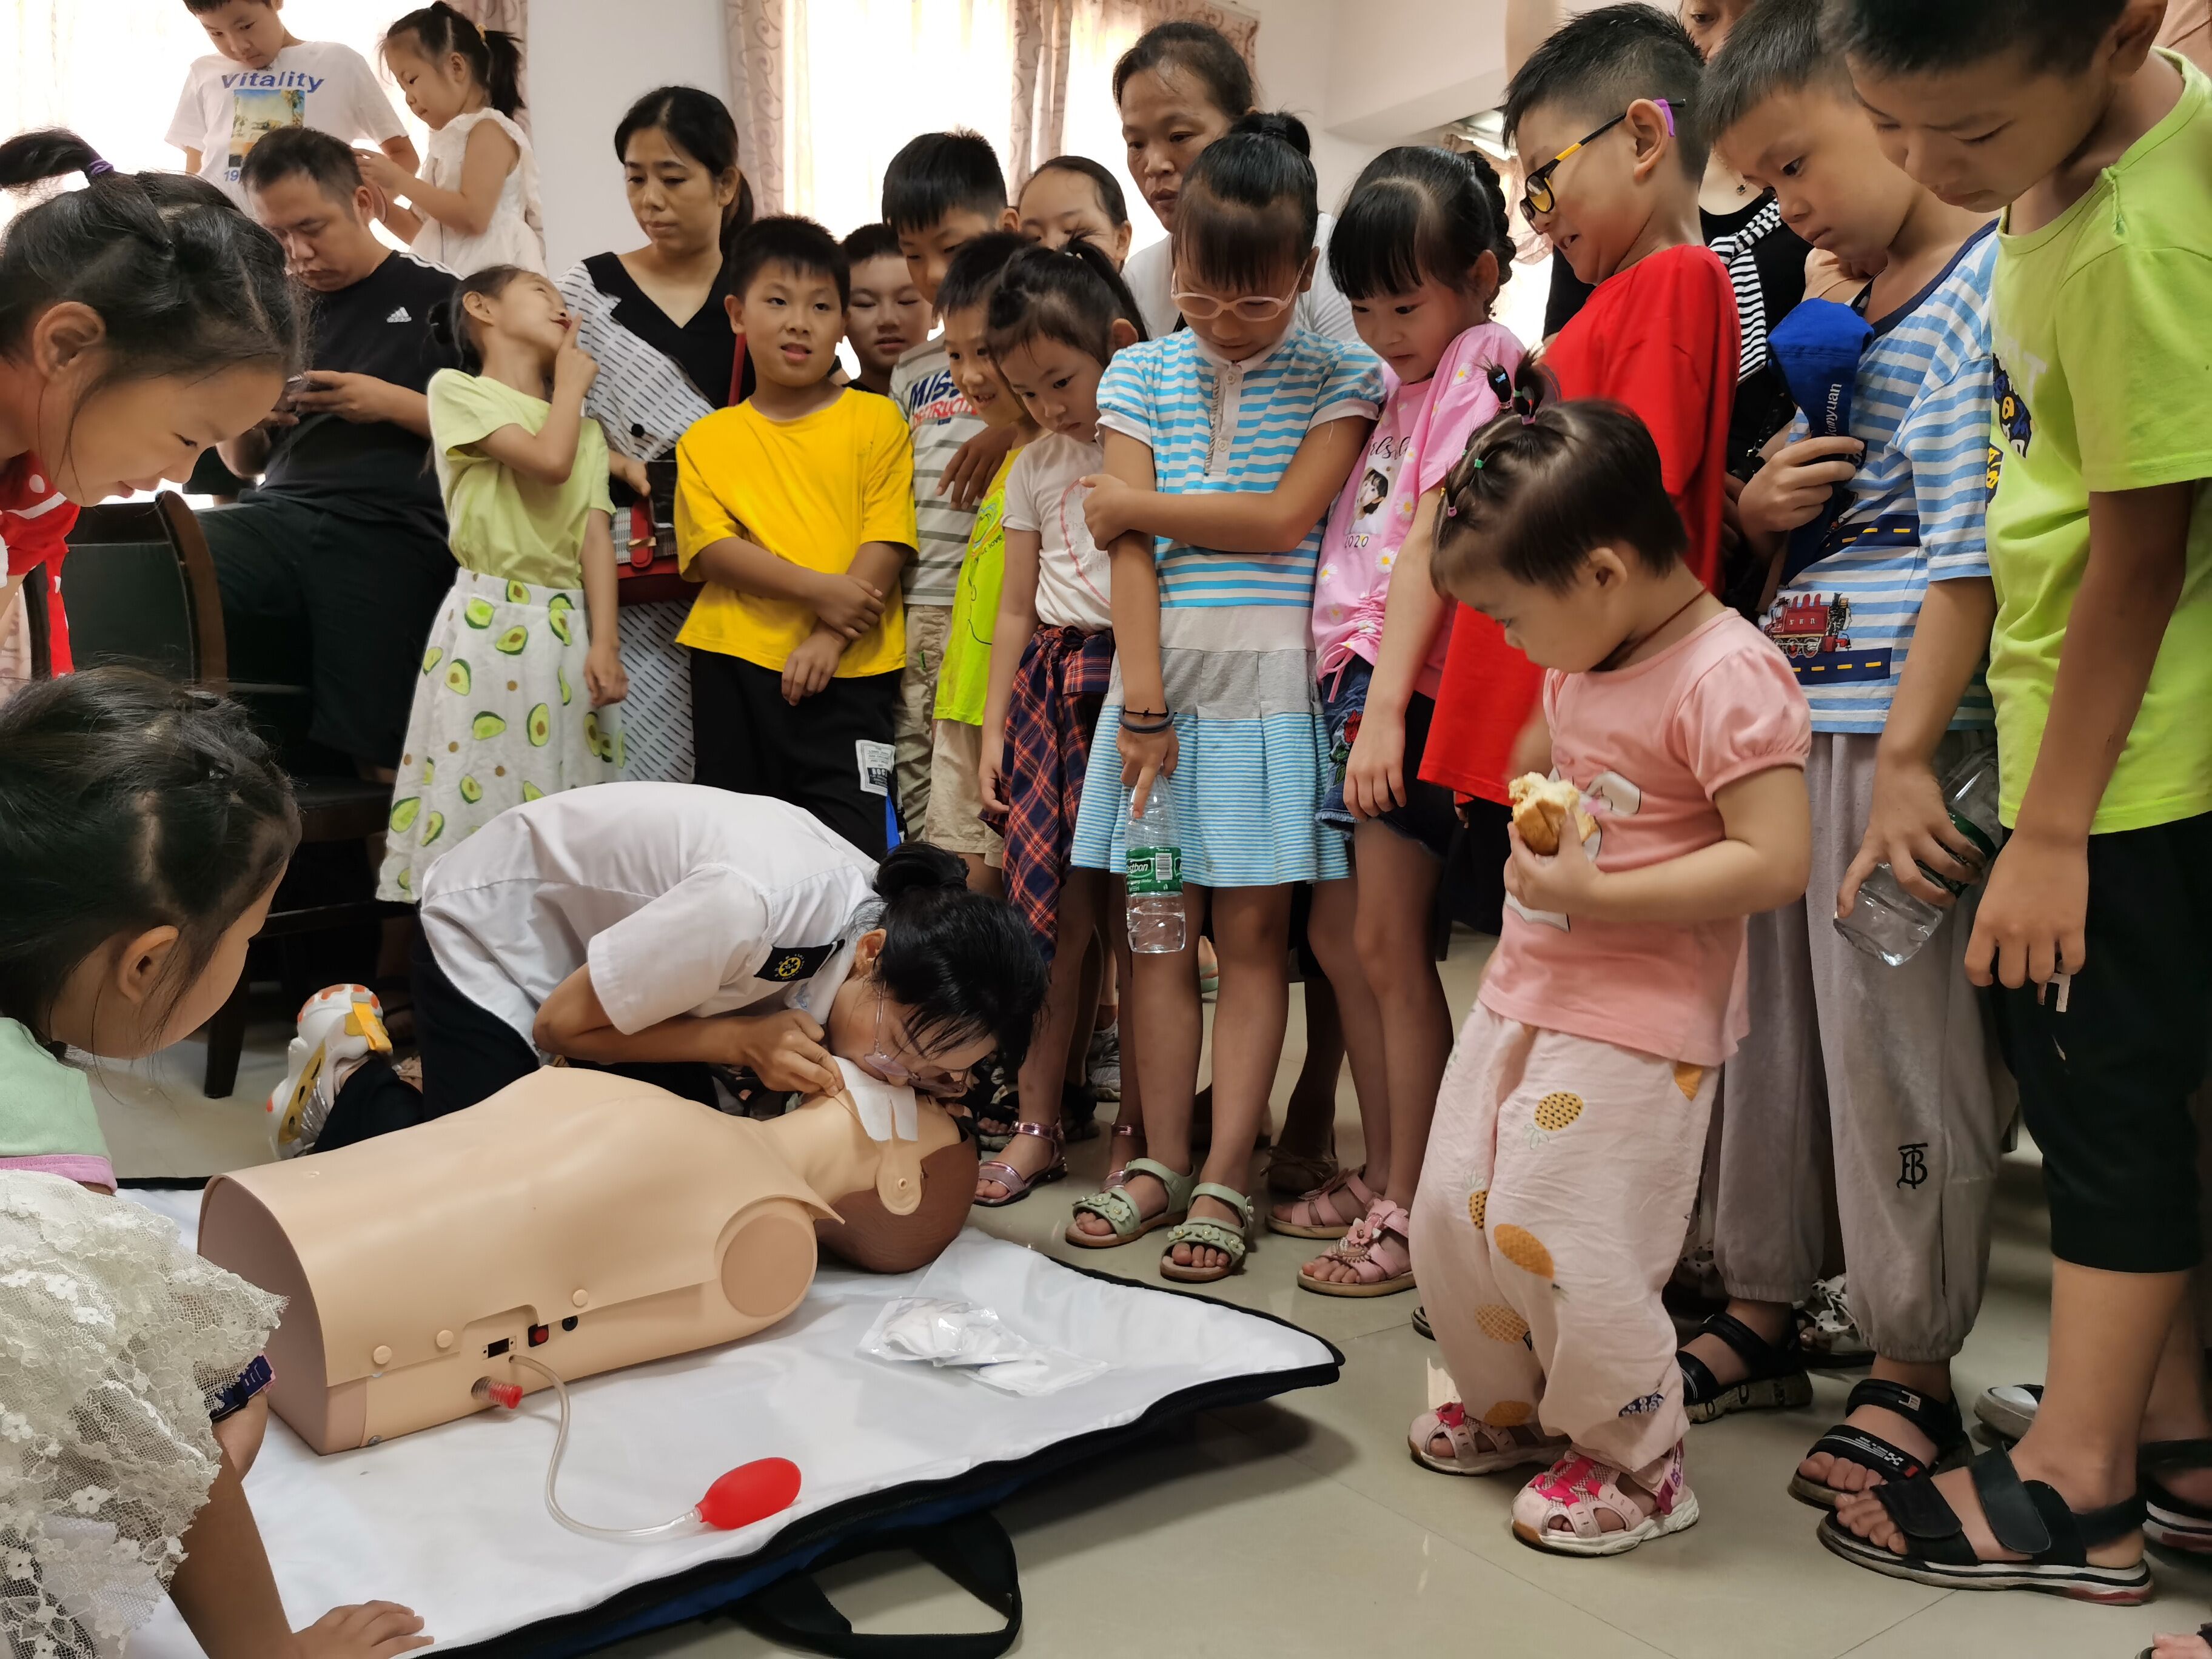 长沙市120急救中心专家在教小朋友们心肺复苏术。